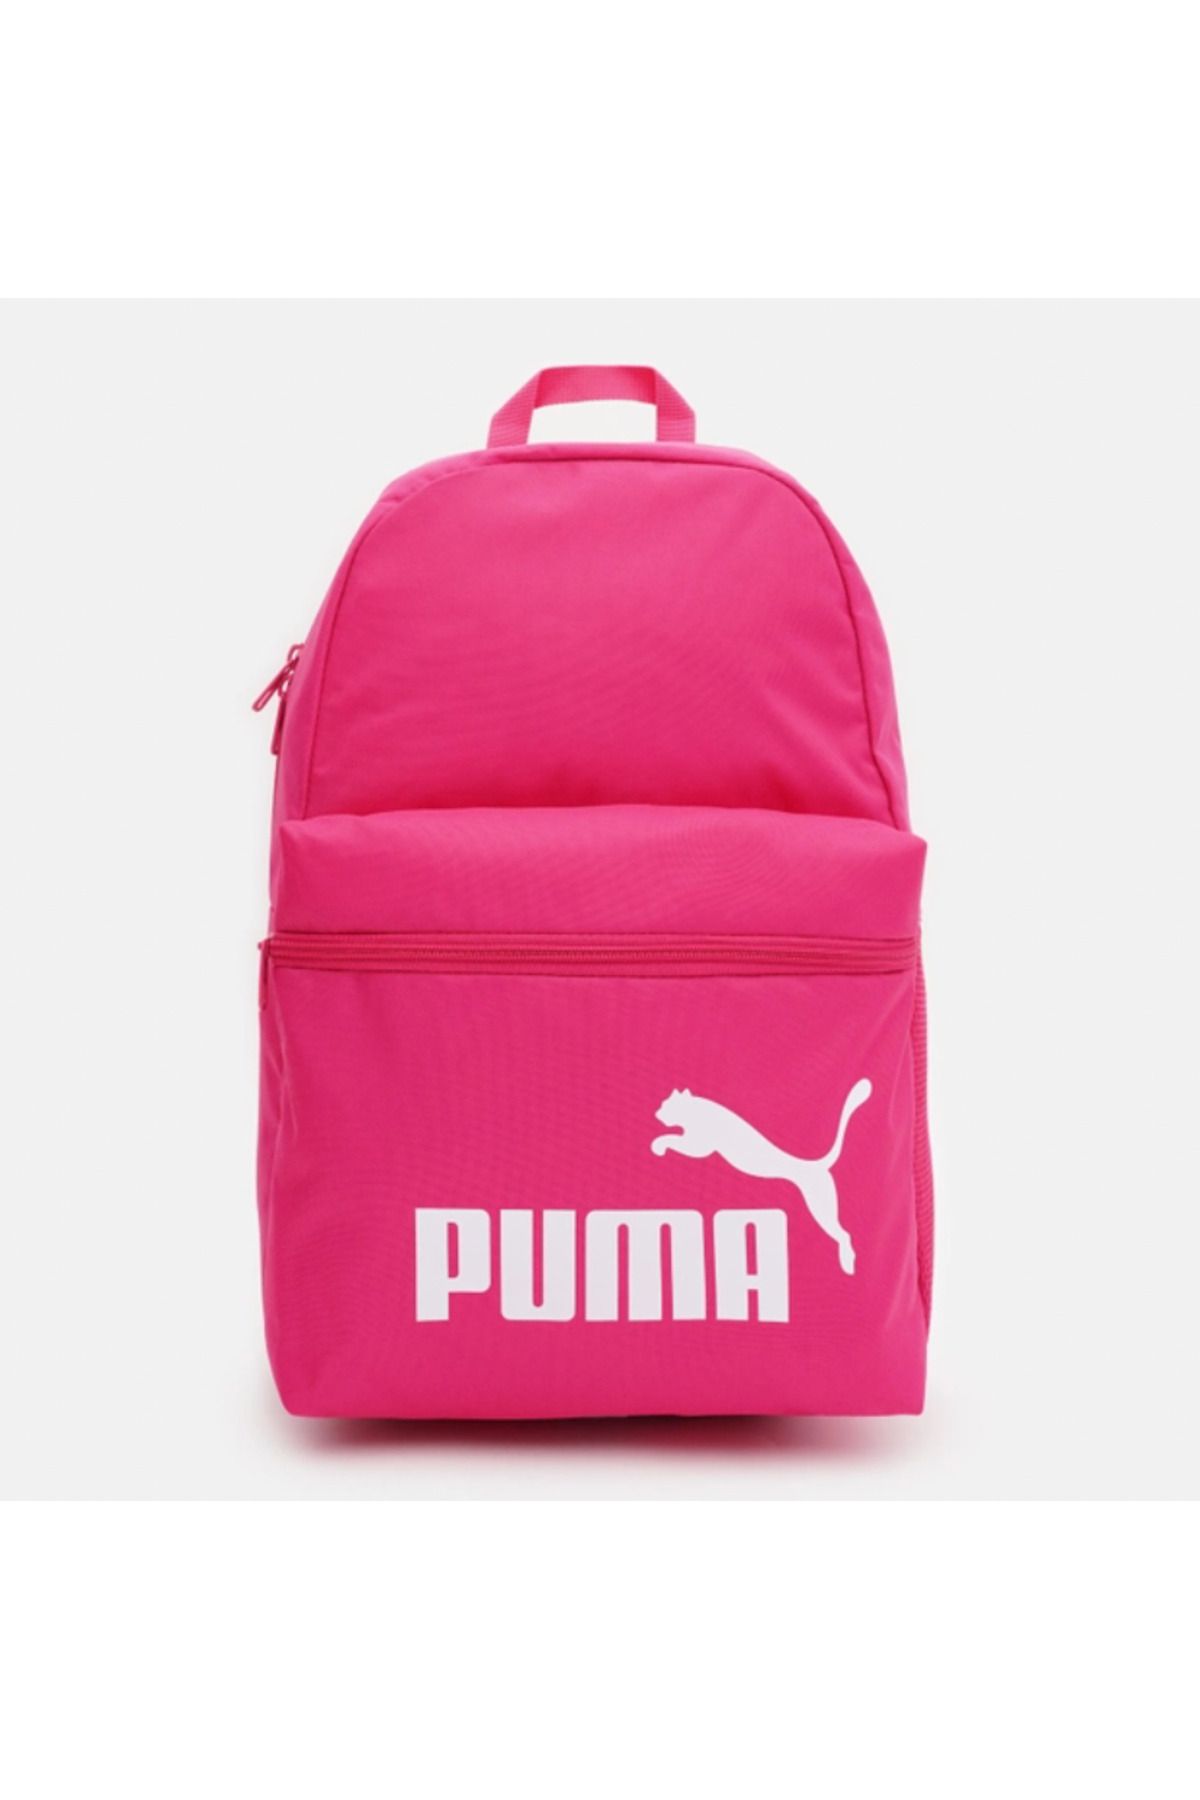 Puma Phase Backpack07994311